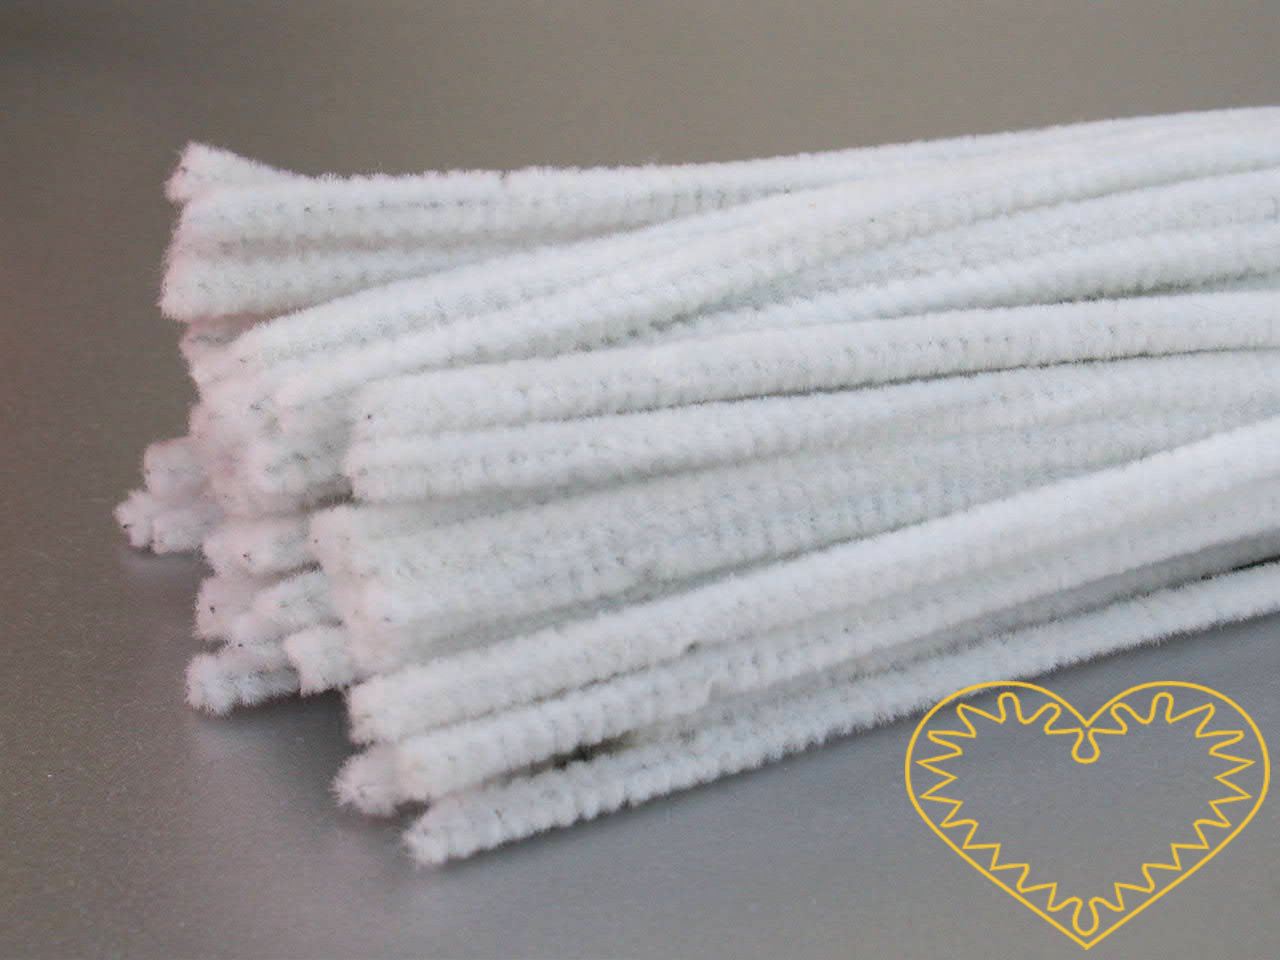 Modelovací chlupatý drátek bílý - délka cca 30 cm. Drátěná tyčinka opletená vláknem se používá k výrobě různých hraček i ozdob. Lze ji všelijak tvarovat, kroutit, splétat, stříhat, kombinovat například s bambulkami, lepit. Drátek skvěle imituje tykad